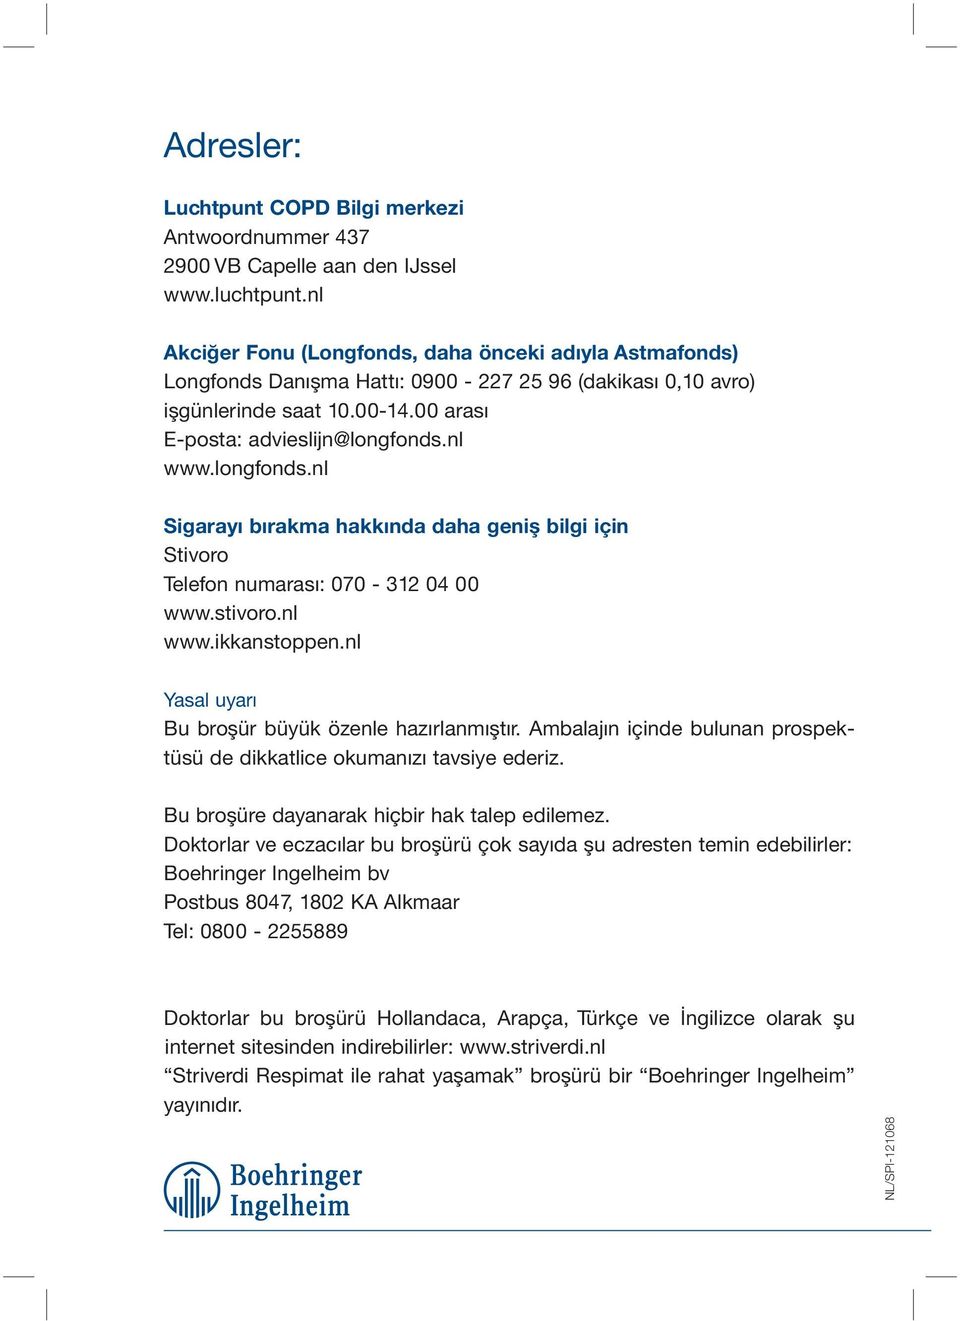 longfonds.nl Sigarayı bırakma hakkında daha geniş bilgi için Stivoro Telefon numarası: 070-312 04 00 www.stivoro.nl www.ikkanstoppen.nl Yasal uyarı Bu broşür büyük özenle hazırlanmıştır.